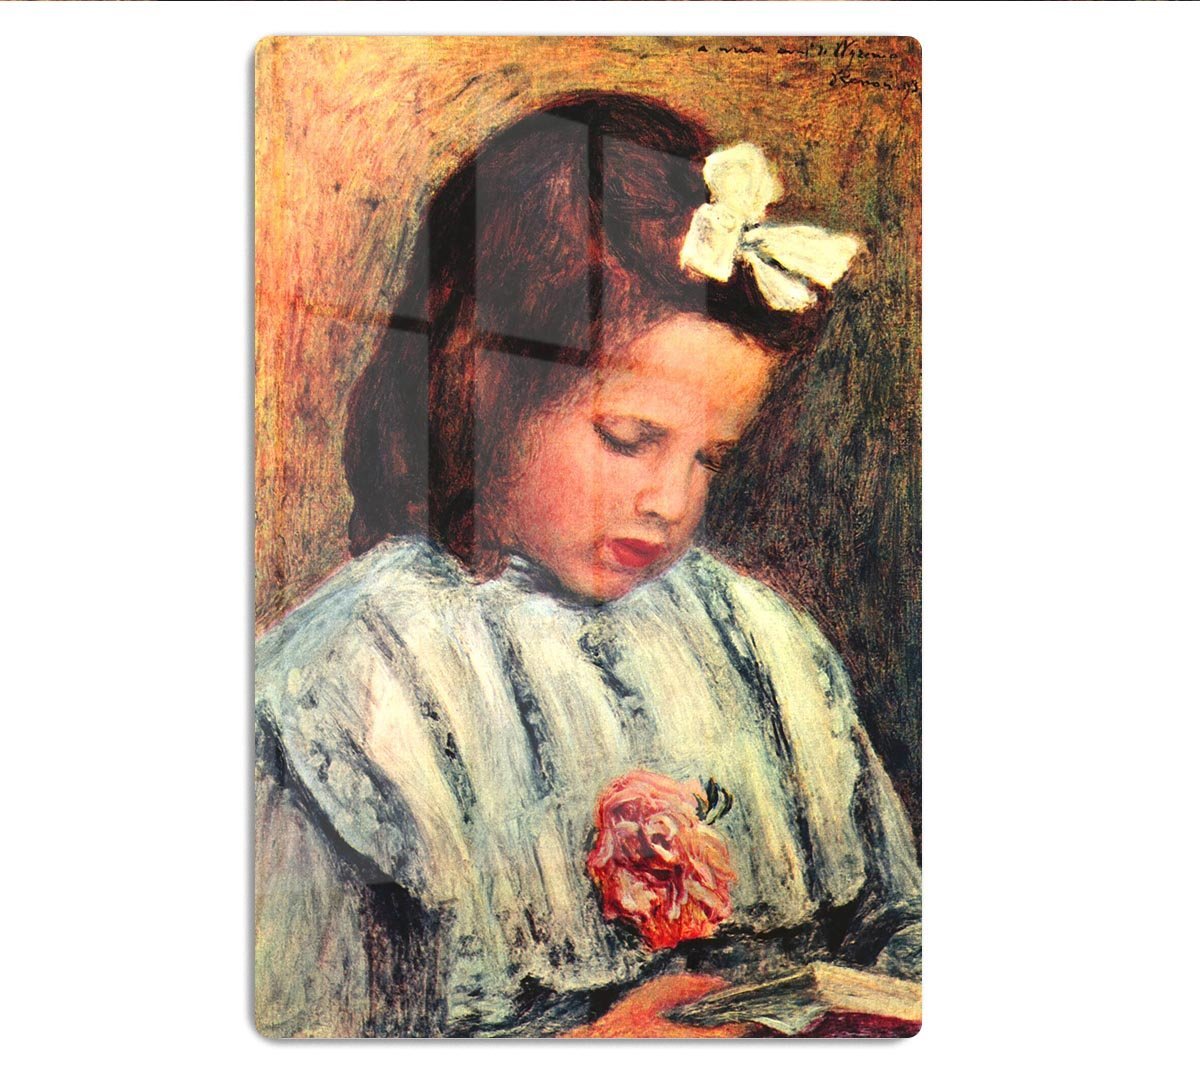 A reading girl by Renoir HD Metal Print